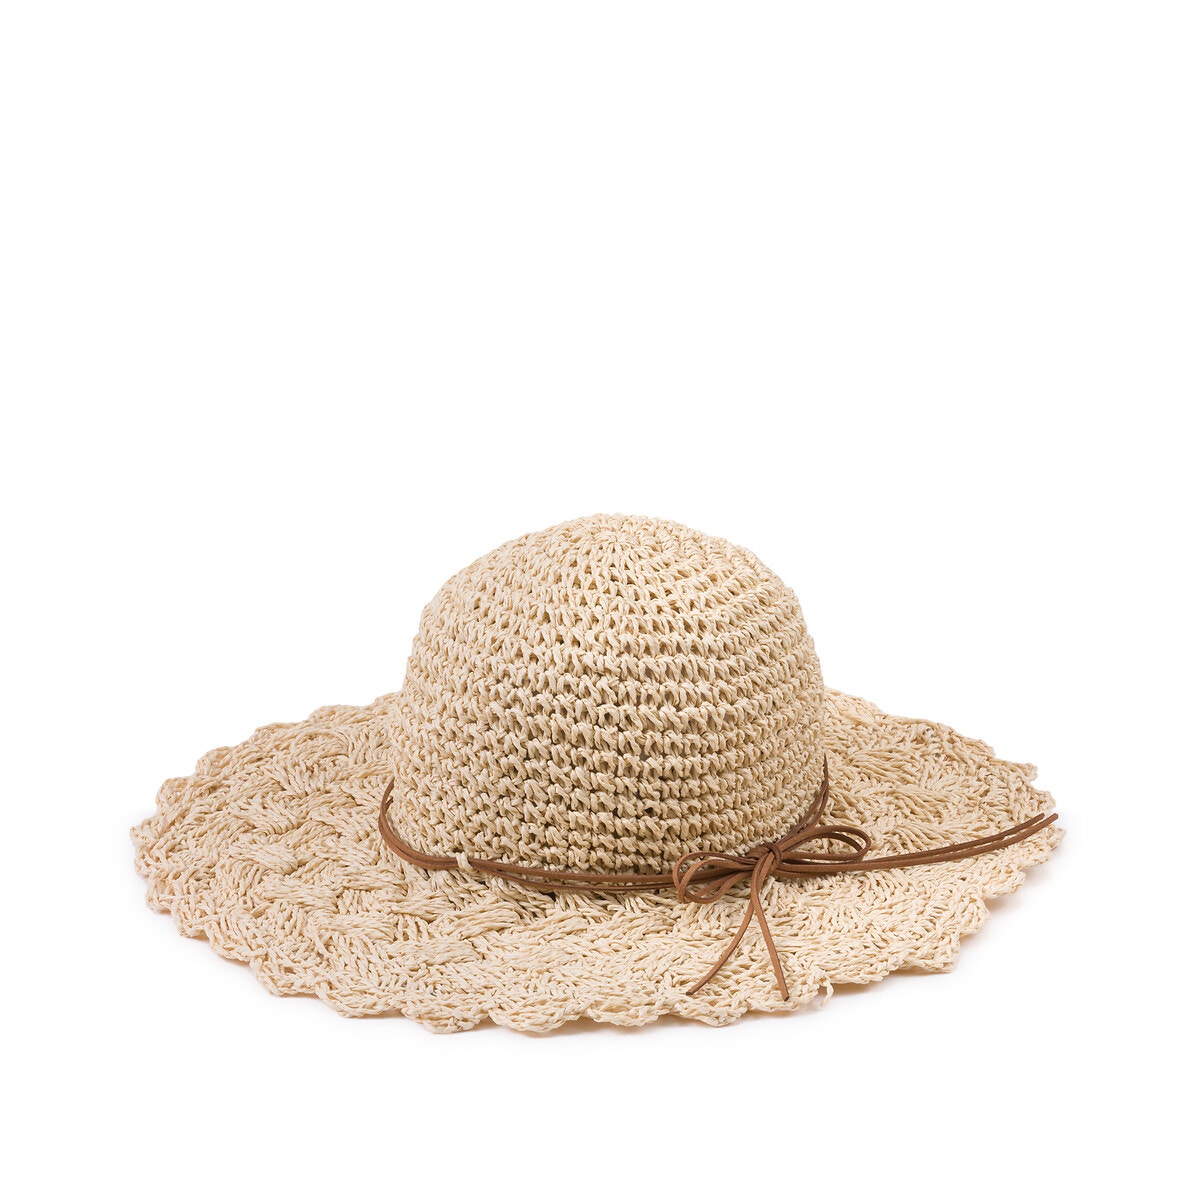 Μαλακό καπέλο από φυσικές ίνες